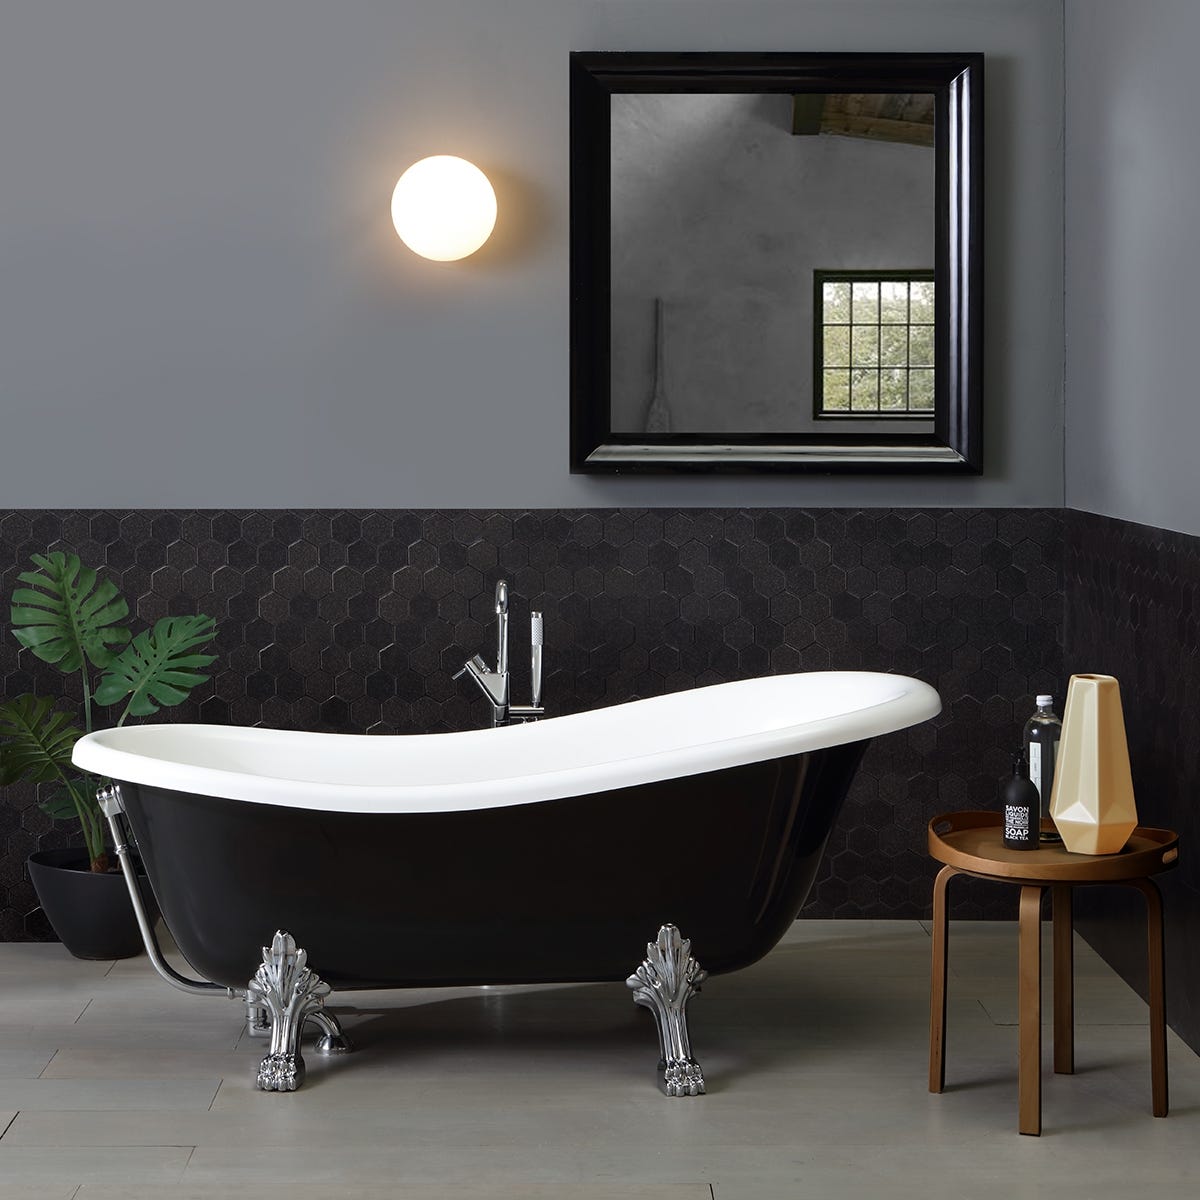 Freistehende Badewanne im klassischen Stil in Schwarz und Weiß | Romantica